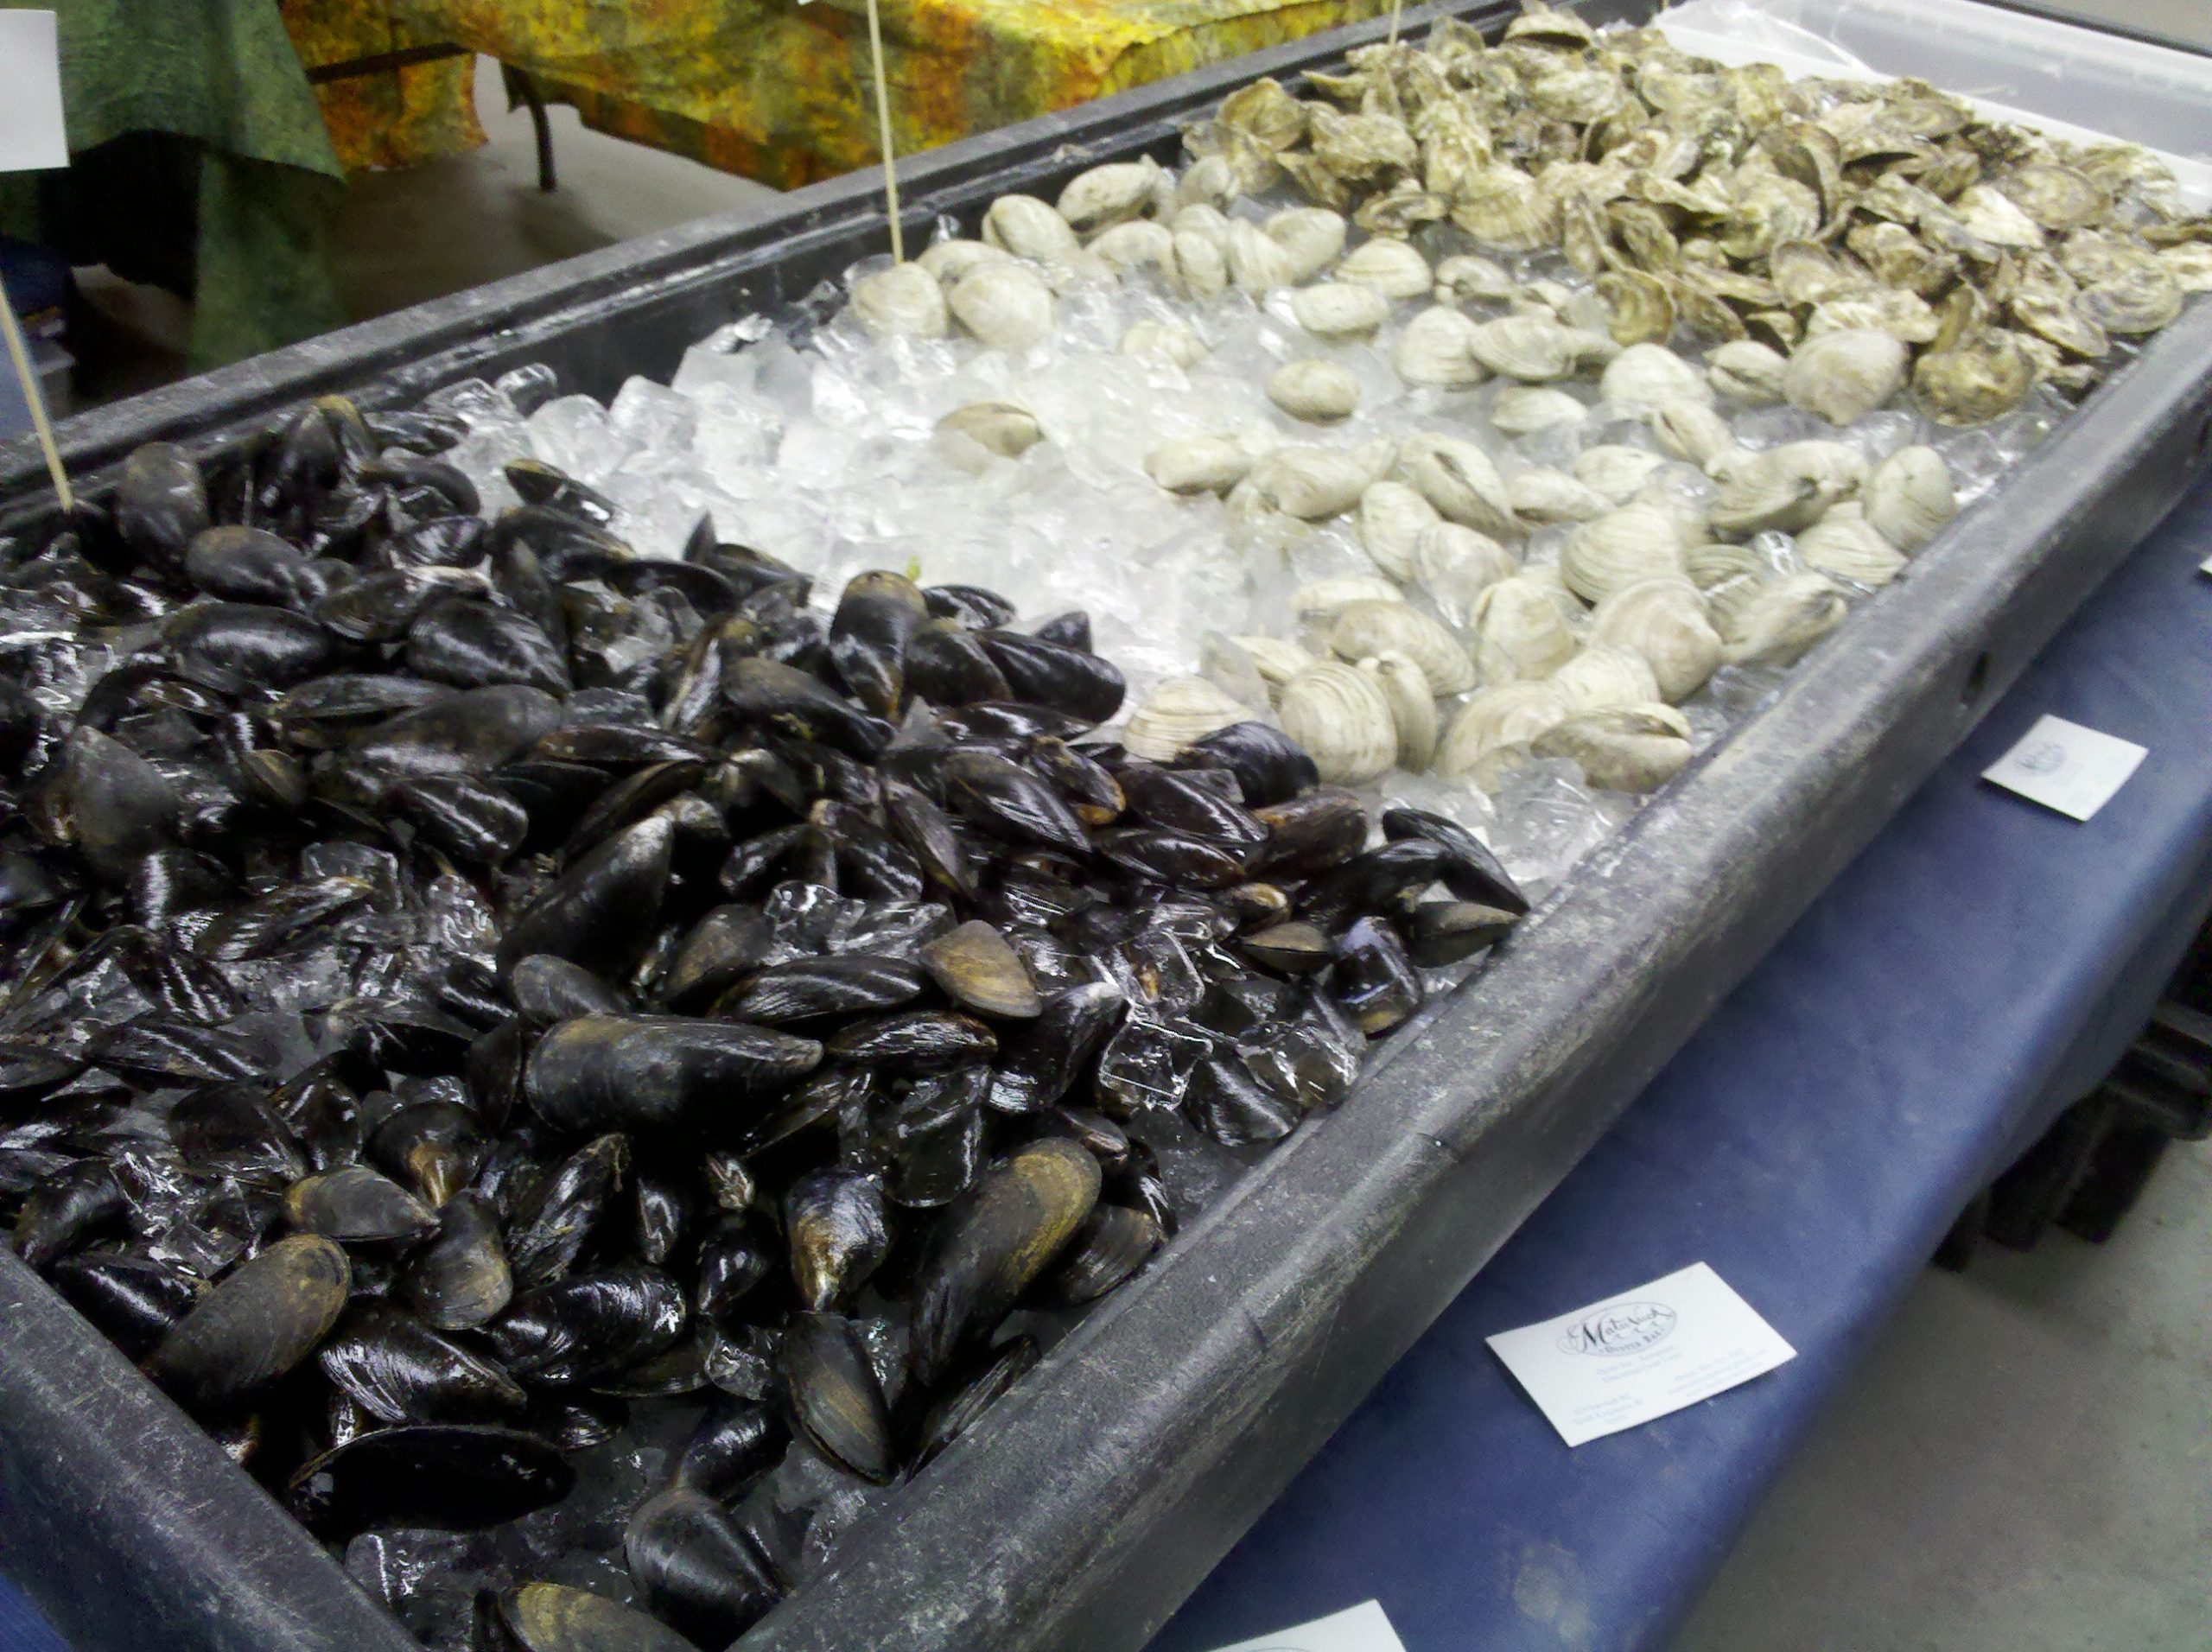 Fresh shellfish from Matunuck